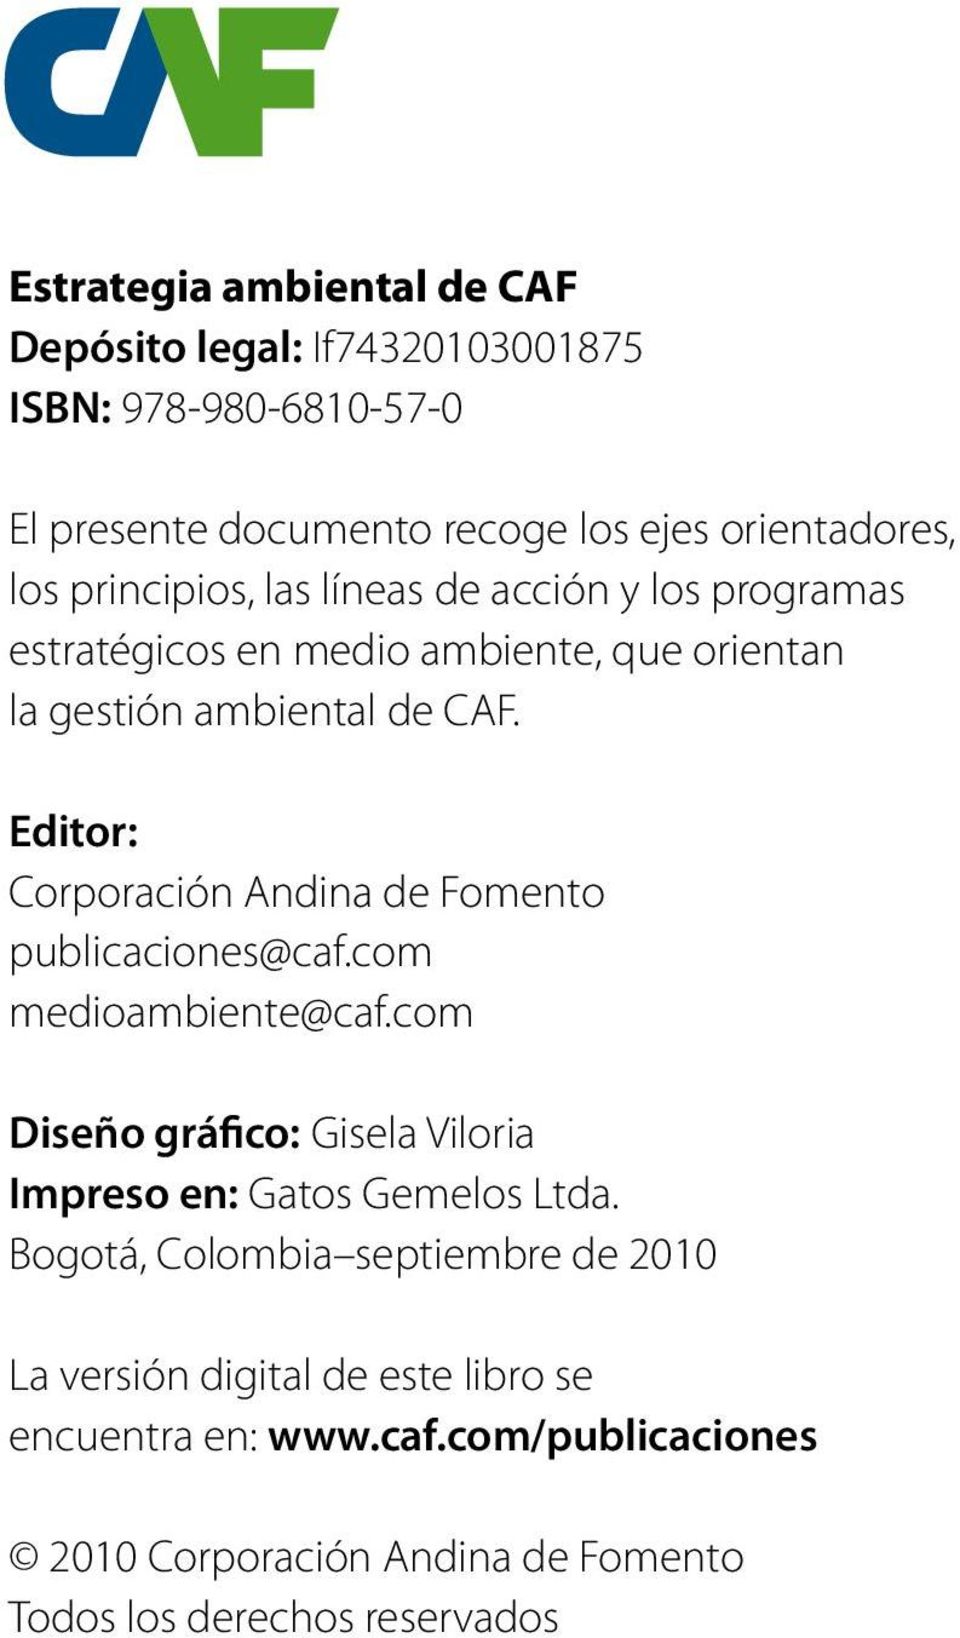 Editor: Corporación Andina de Fomento publicaciones@caf.com medioambiente@caf.com Diseño gráfico: Gisela Viloria Impreso en: Gatos Gemelos Ltda.